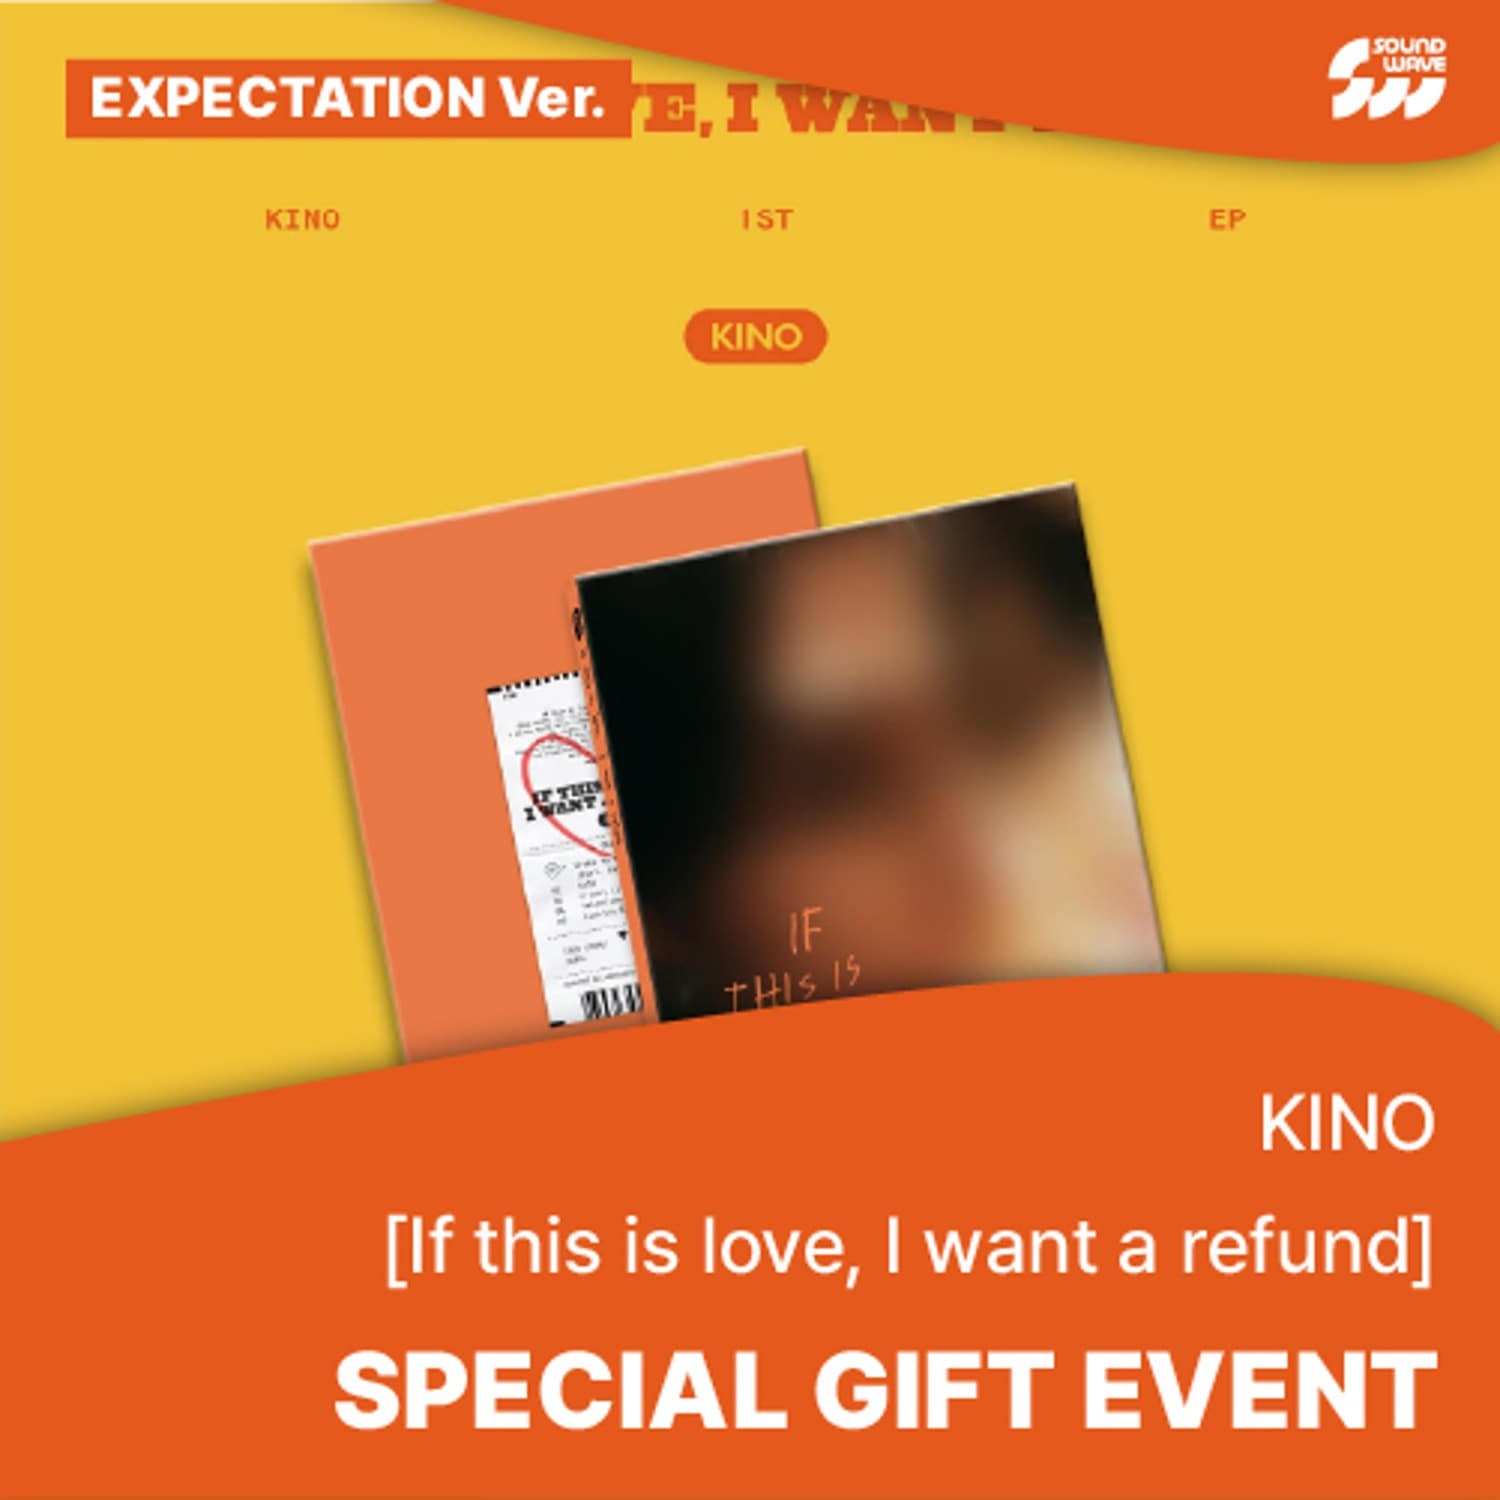 [특전증정] 키노(KINO) - 1st EP [If this is love, I want a refund] (Expectation ver.) **미공개 셀카 포토카드 2종 중 1종 랜덤 증정